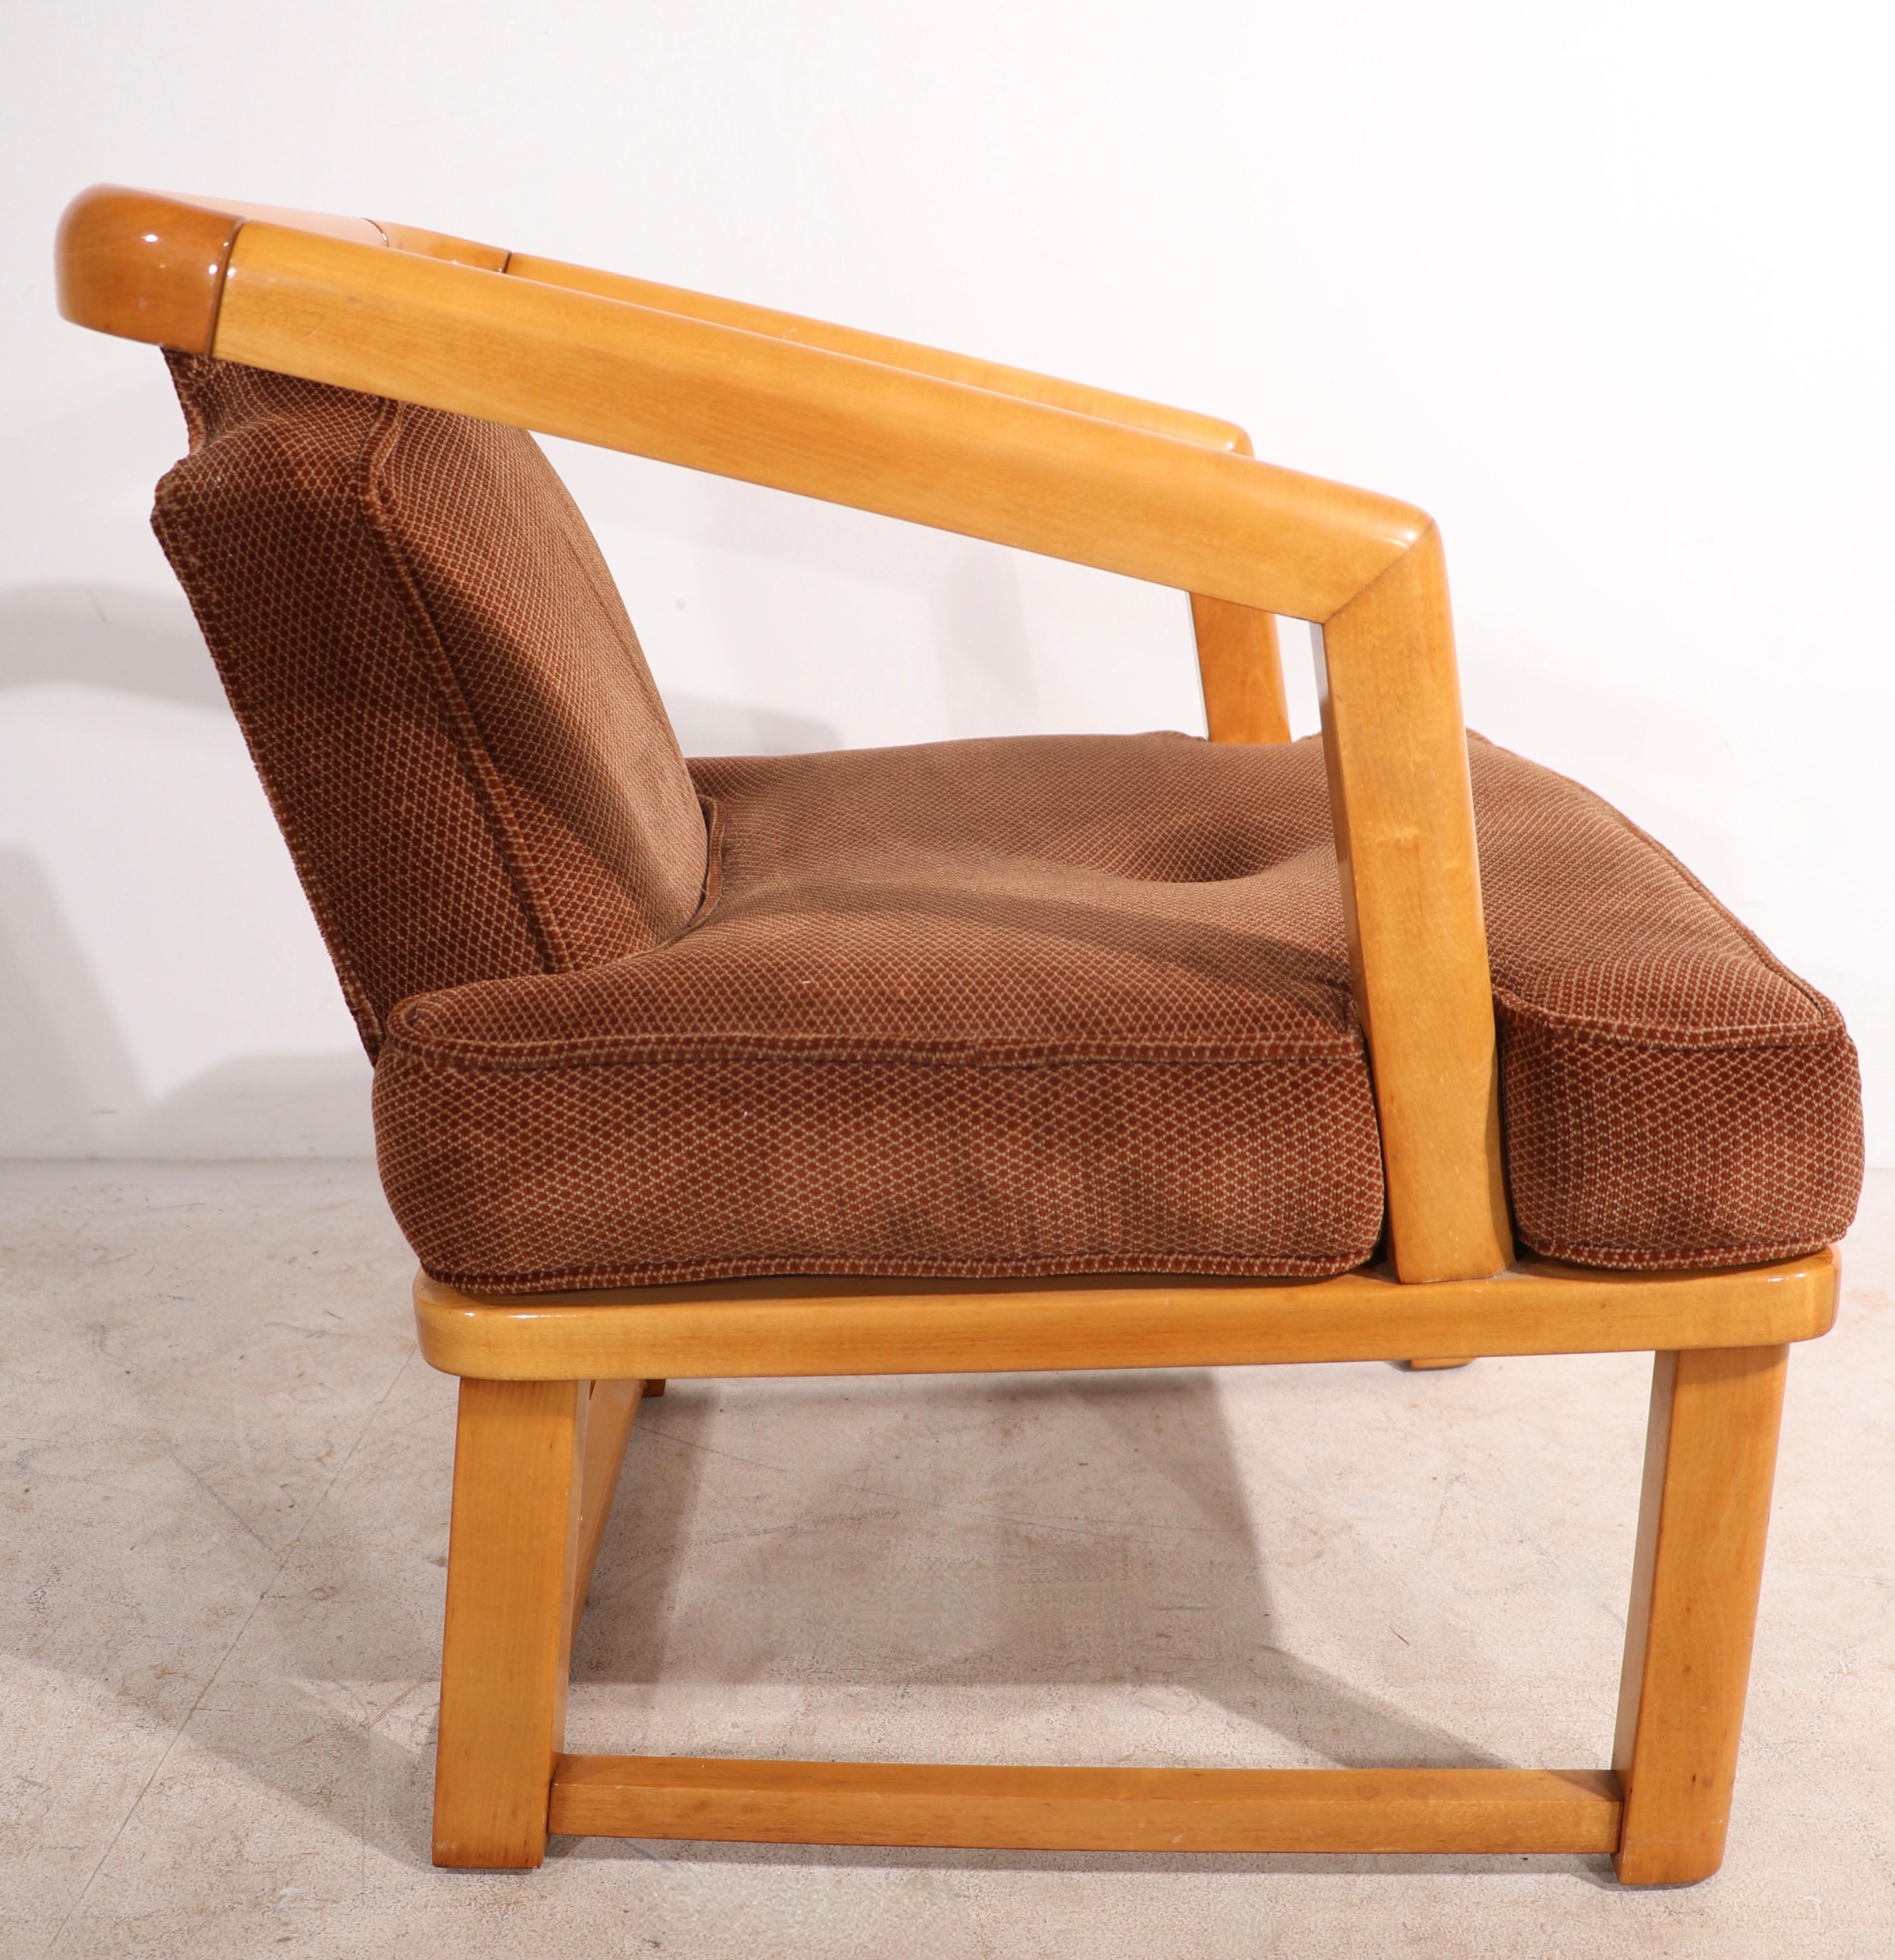 Schicker architektonischer Sessel mit einem Gestell aus Massivholz (Ahorn) und gepolstertem Sitz und Rücken. Der Stuhl ist in sehr gutem, originalem Zustand, sauber und einsatzbereit. Wir können die Form nicht dokumentieren, aber wir glauben, dass